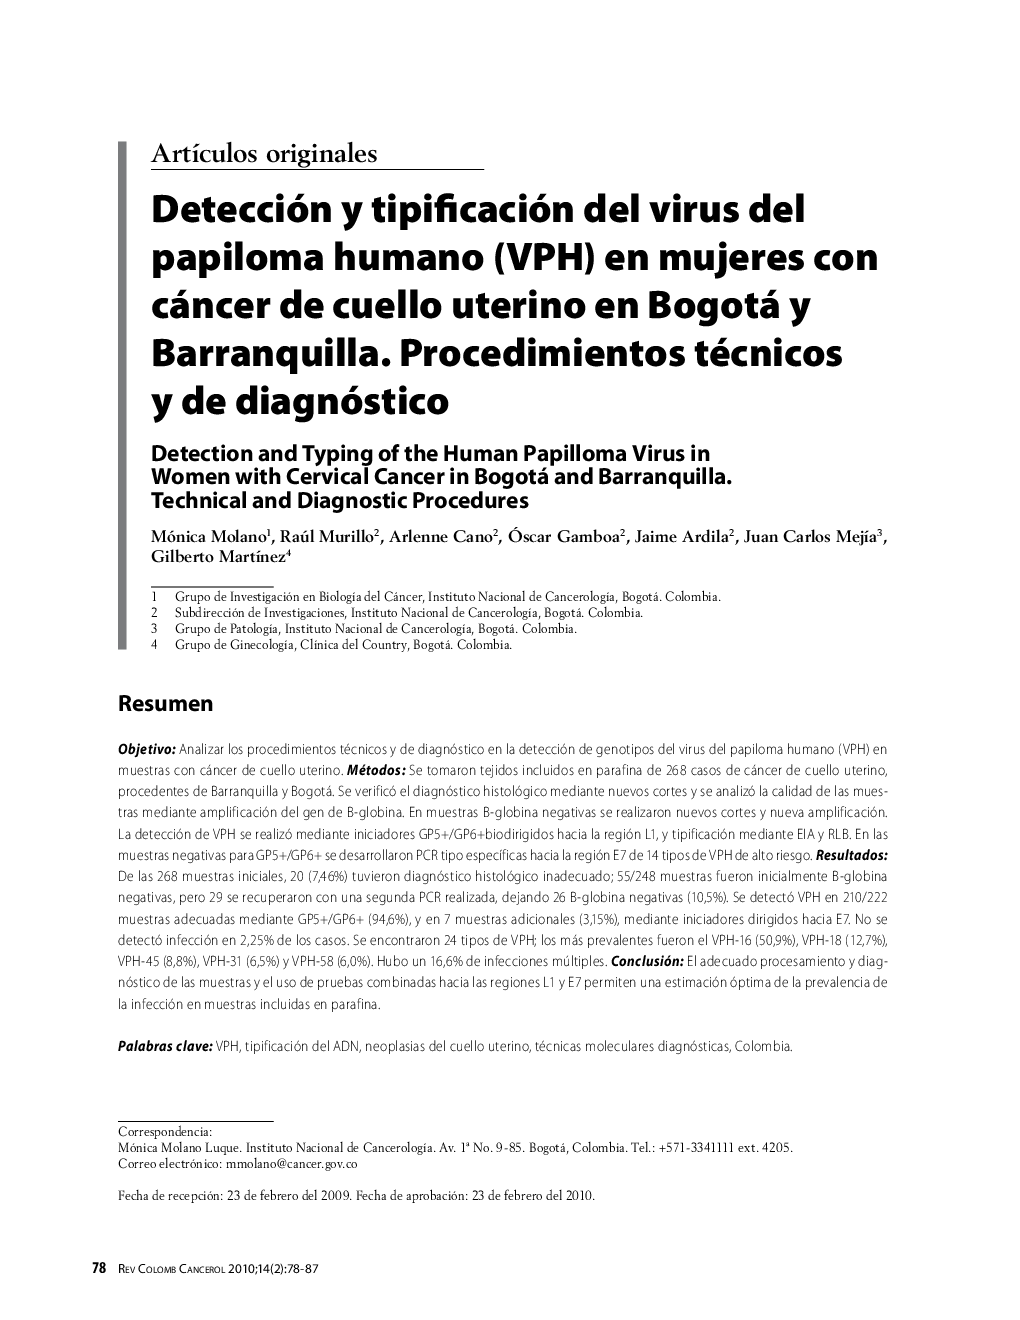 Detección y tipificación del virus del papiloma humano (VPH) en mujeres con cáncer de cuello uterino en Bogotá y Barranquilla. Procedimientos técnicos y de diagnóstico